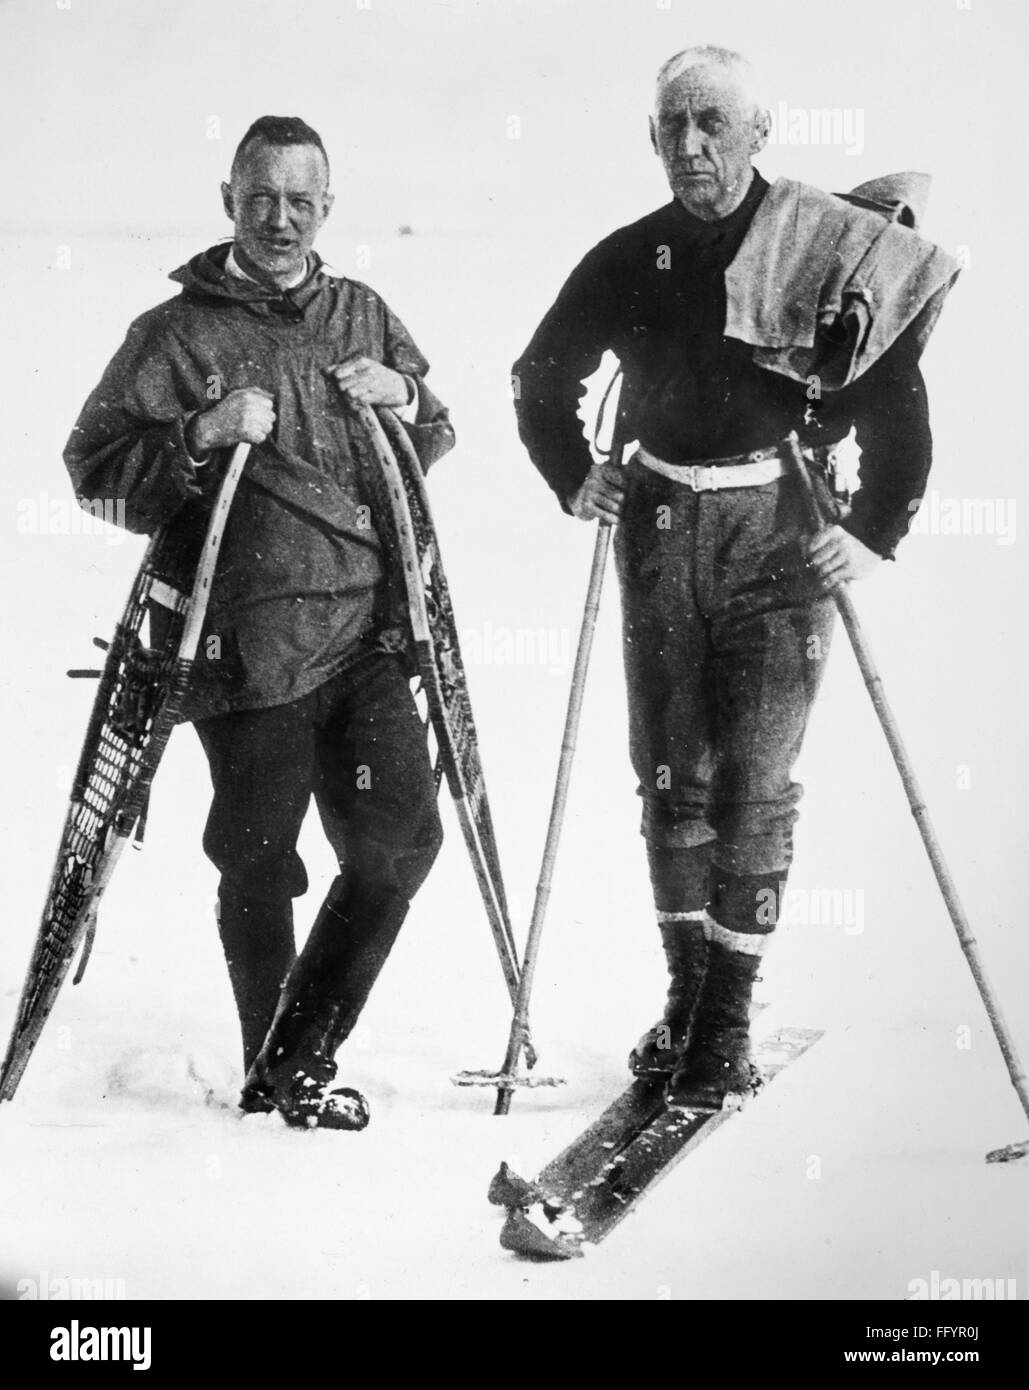 ELLSWORTH & AMUNDSEN, c1926. /NAmerican e gli esploratori norvegesi Lincoln Ellsworth (sinistra) e Roald Amundsen, fotografato a isola Spitsbergen, Norvegia, durante una spedizione di volare al di sopra del polo nord, c1926. Foto Stock